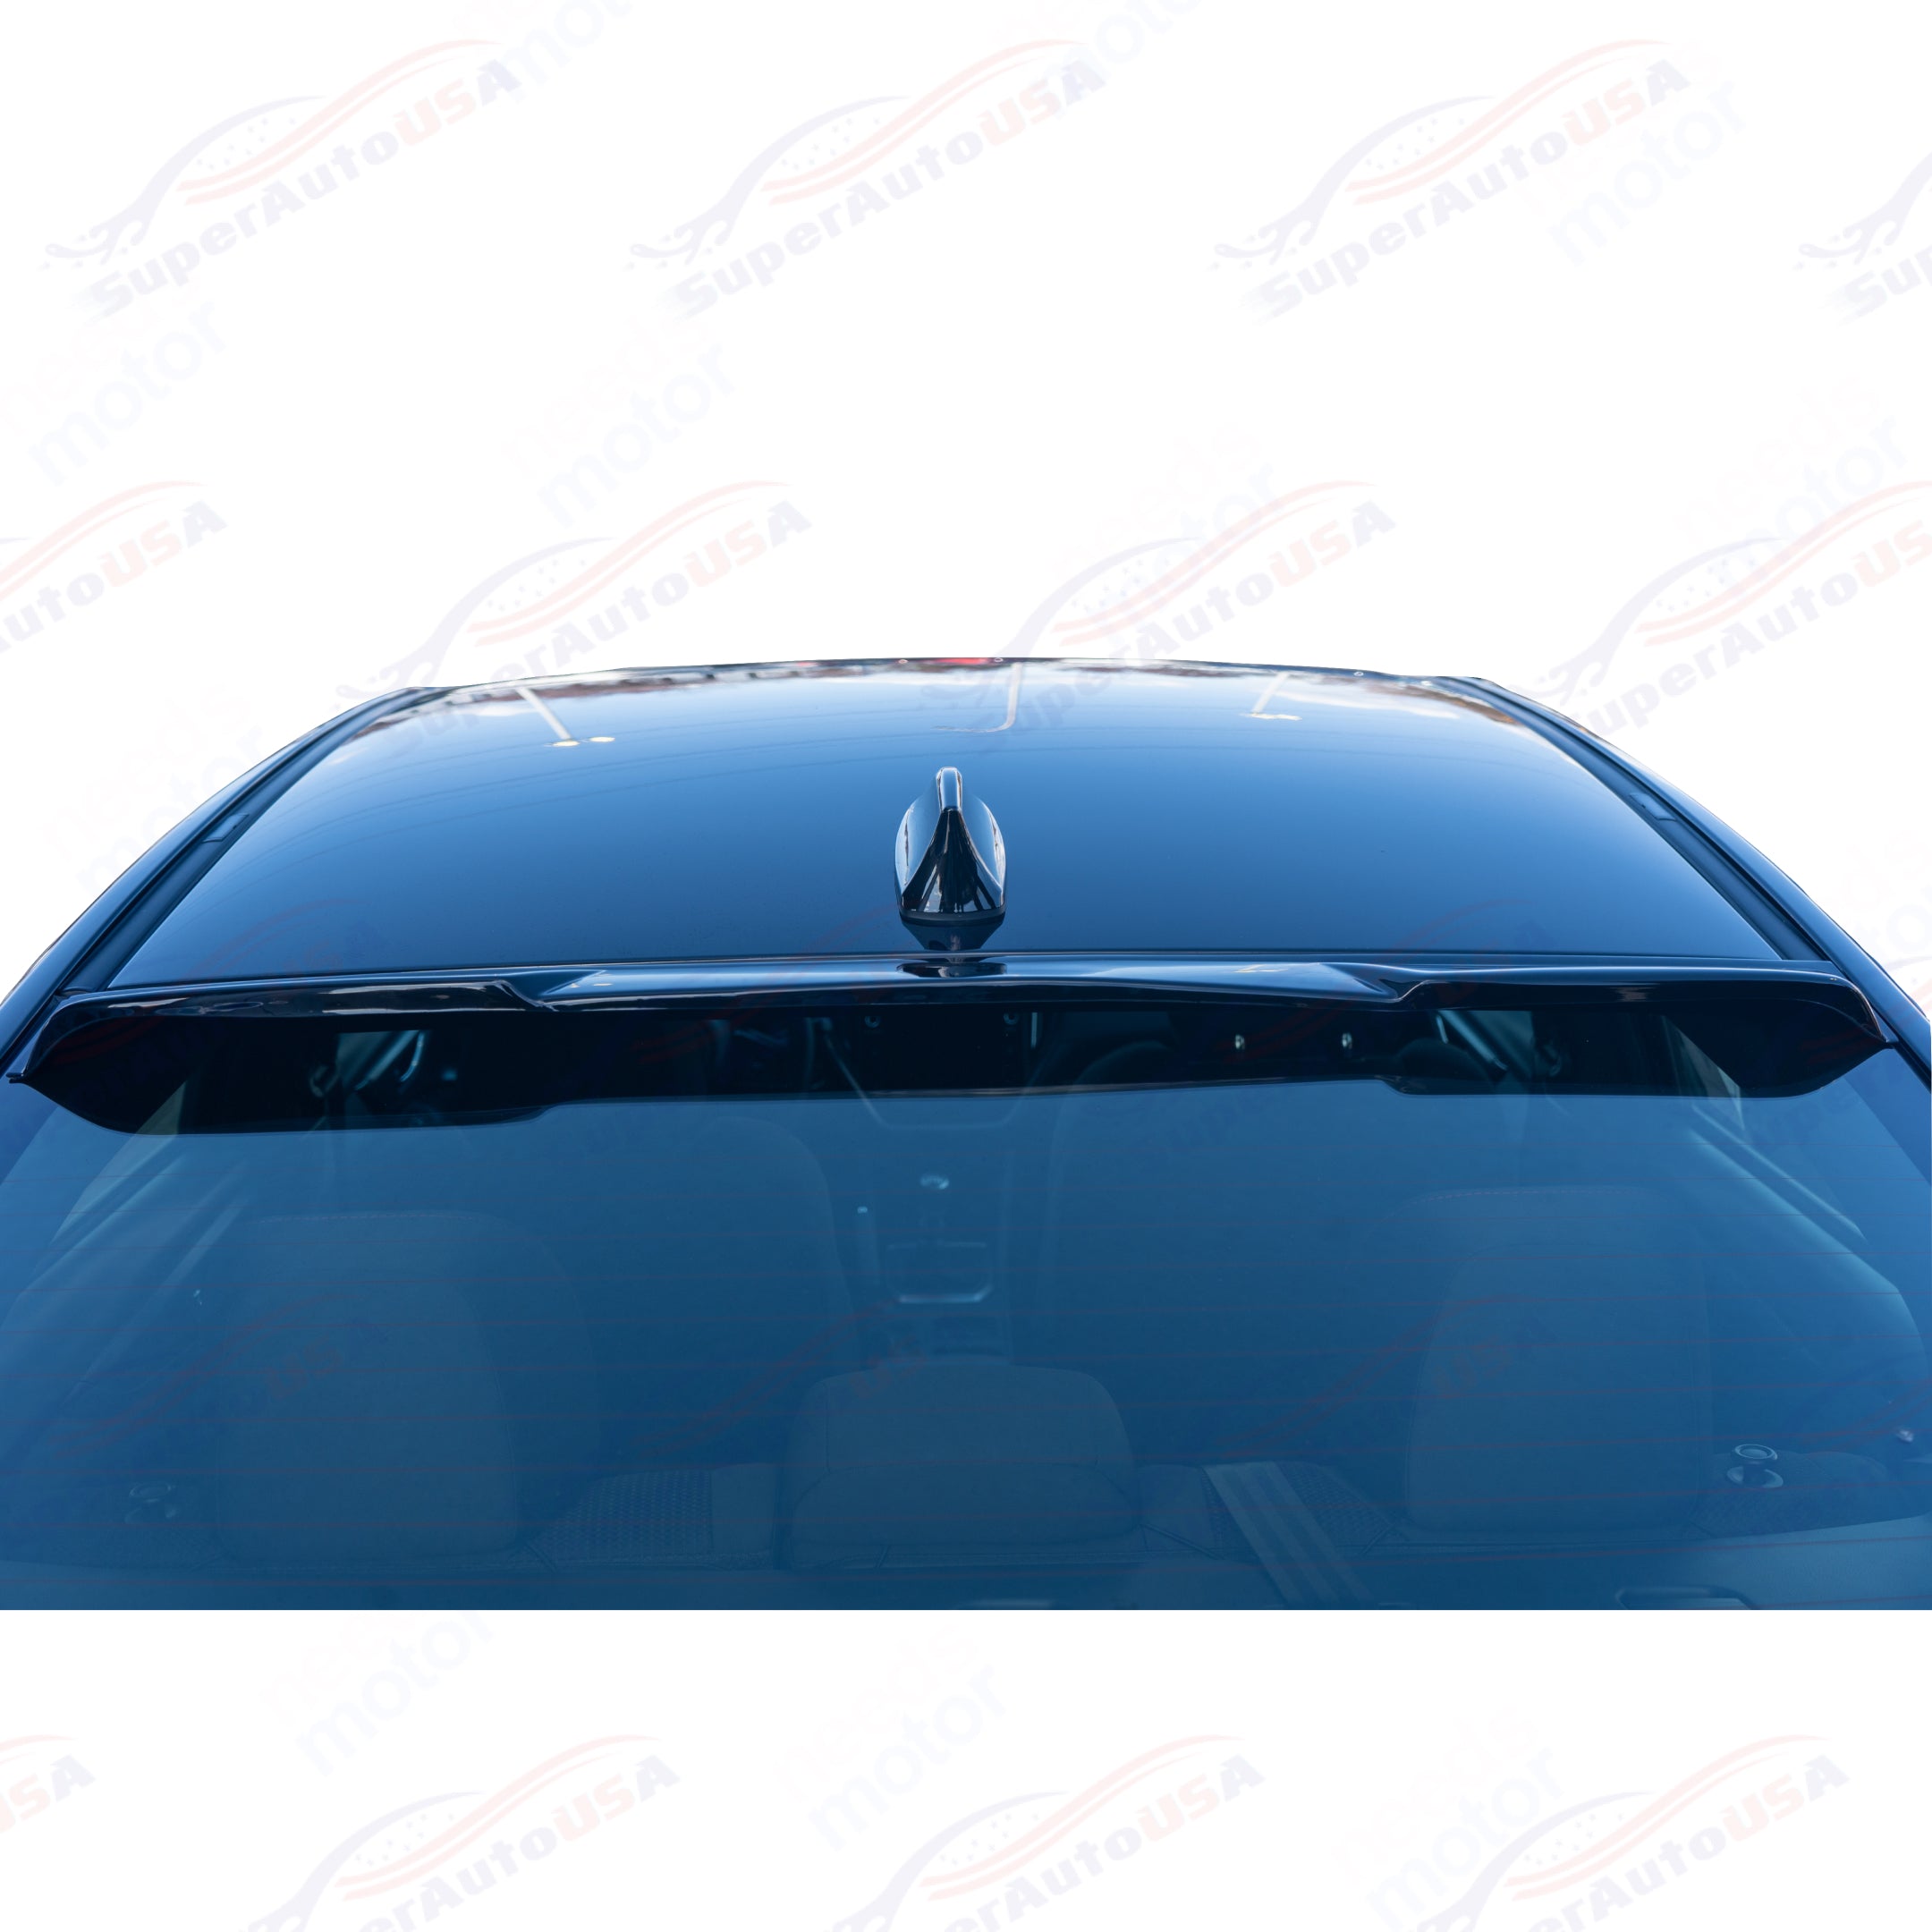 For Chevrolet Camaro 2010-15 ABS Gloss Black Rear Roof Window Visor Spoiler Wing